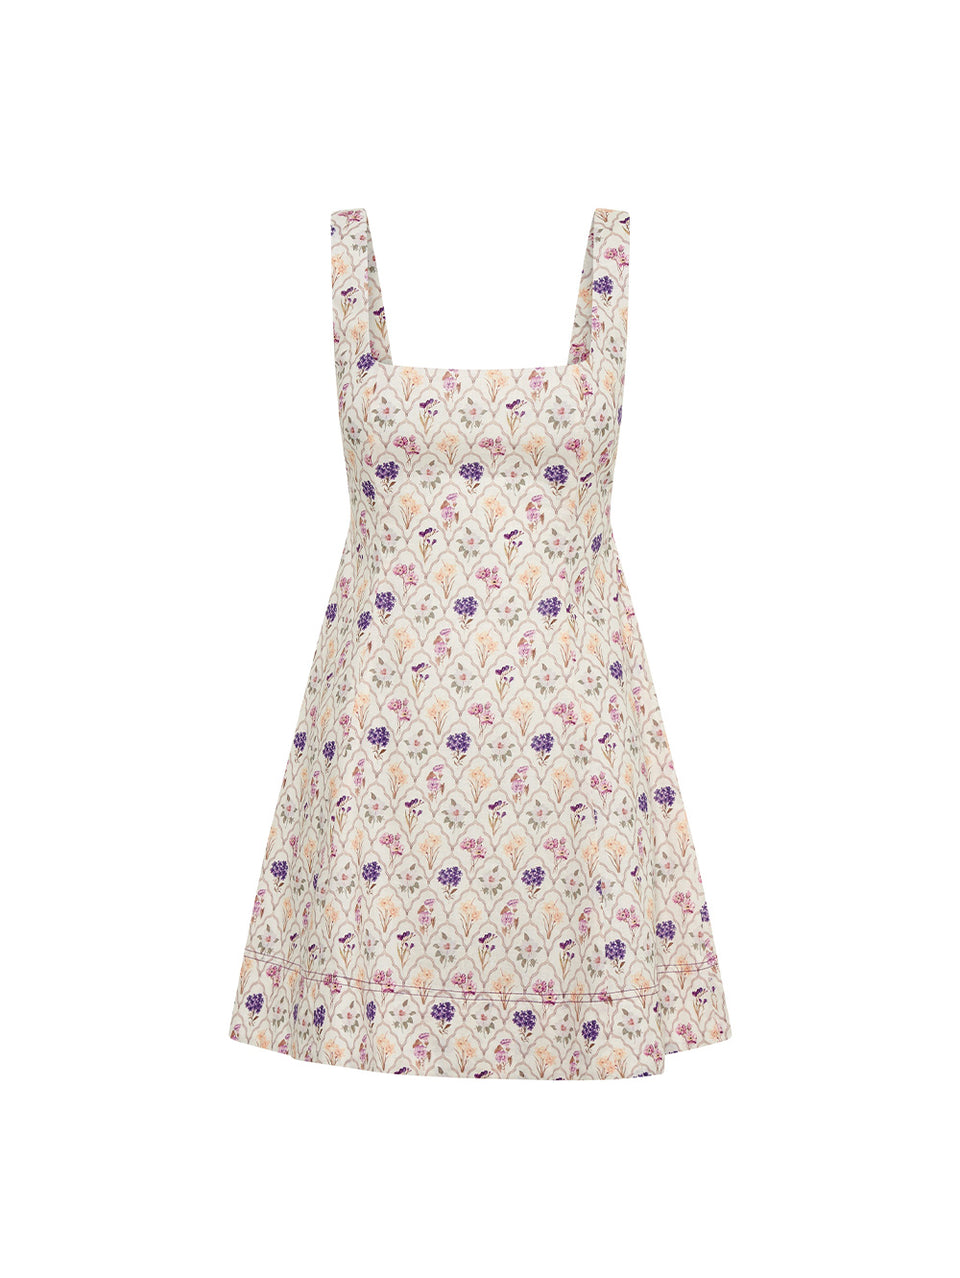 Fleur Mini Dress KIVARI | White and purple floral print mini dress